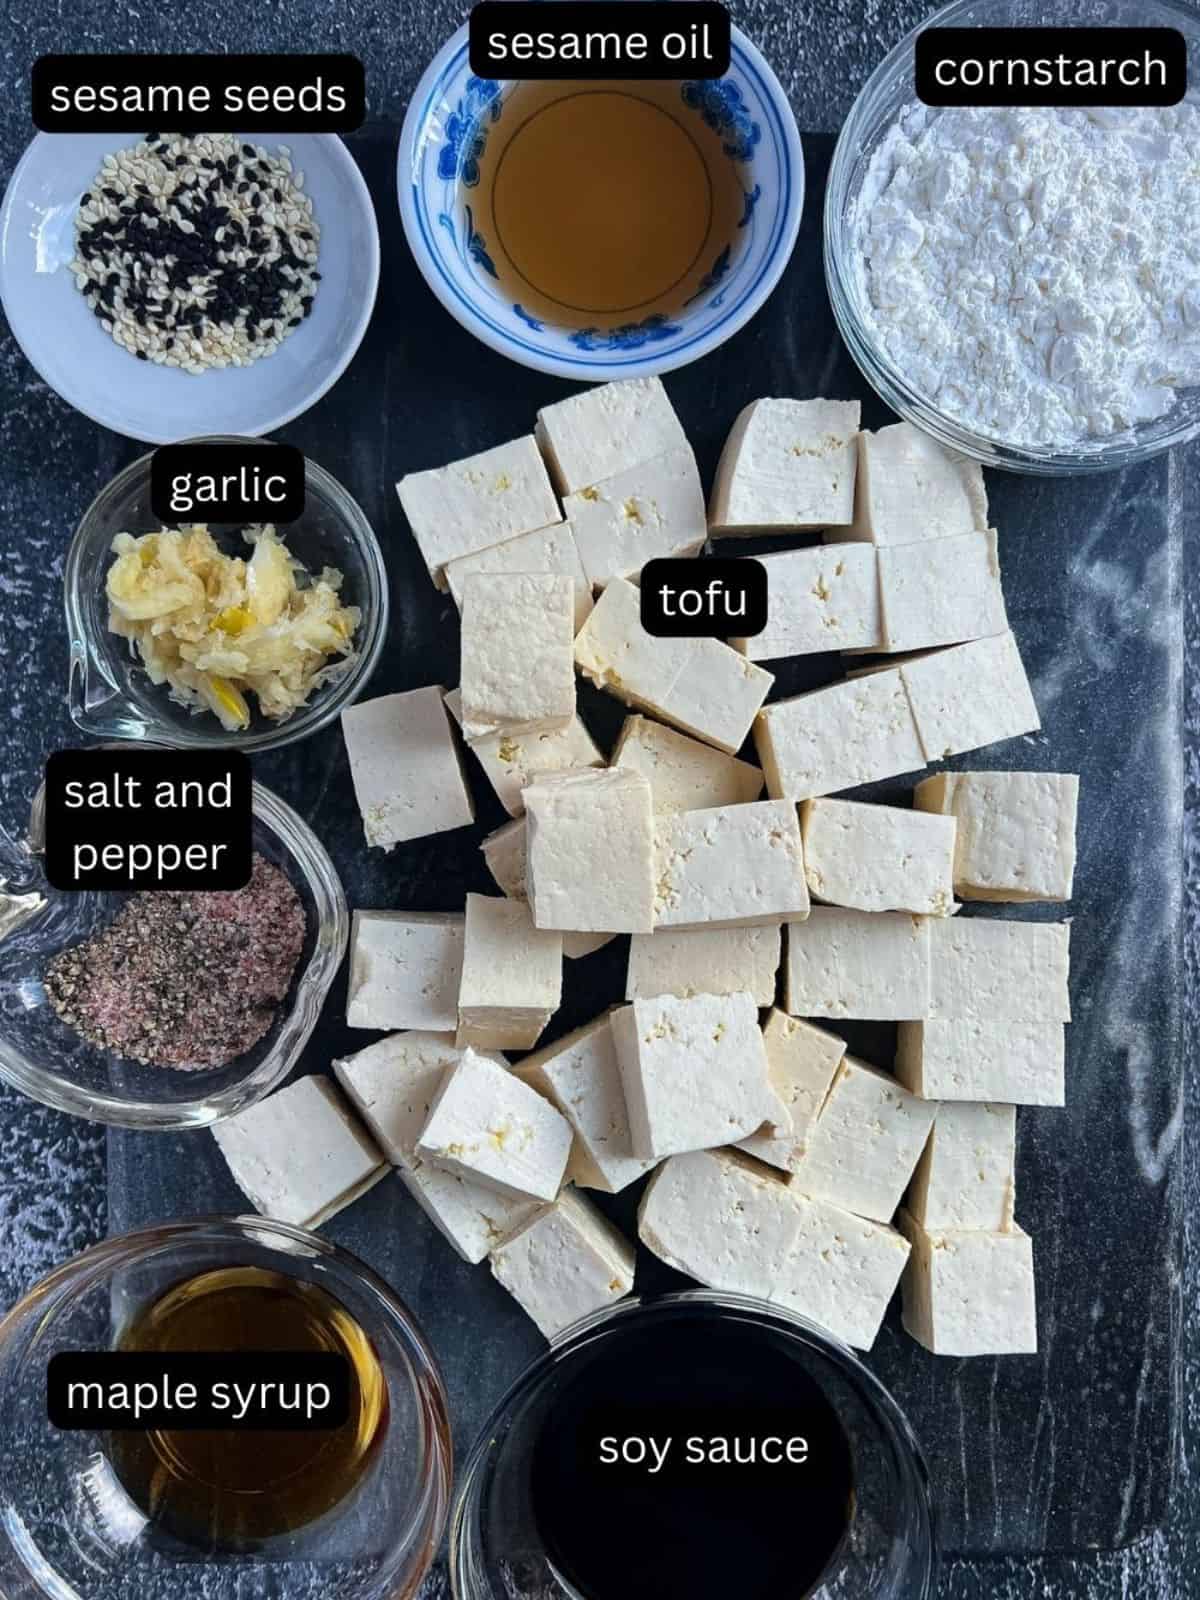 Ingredients for making this tofu dish.